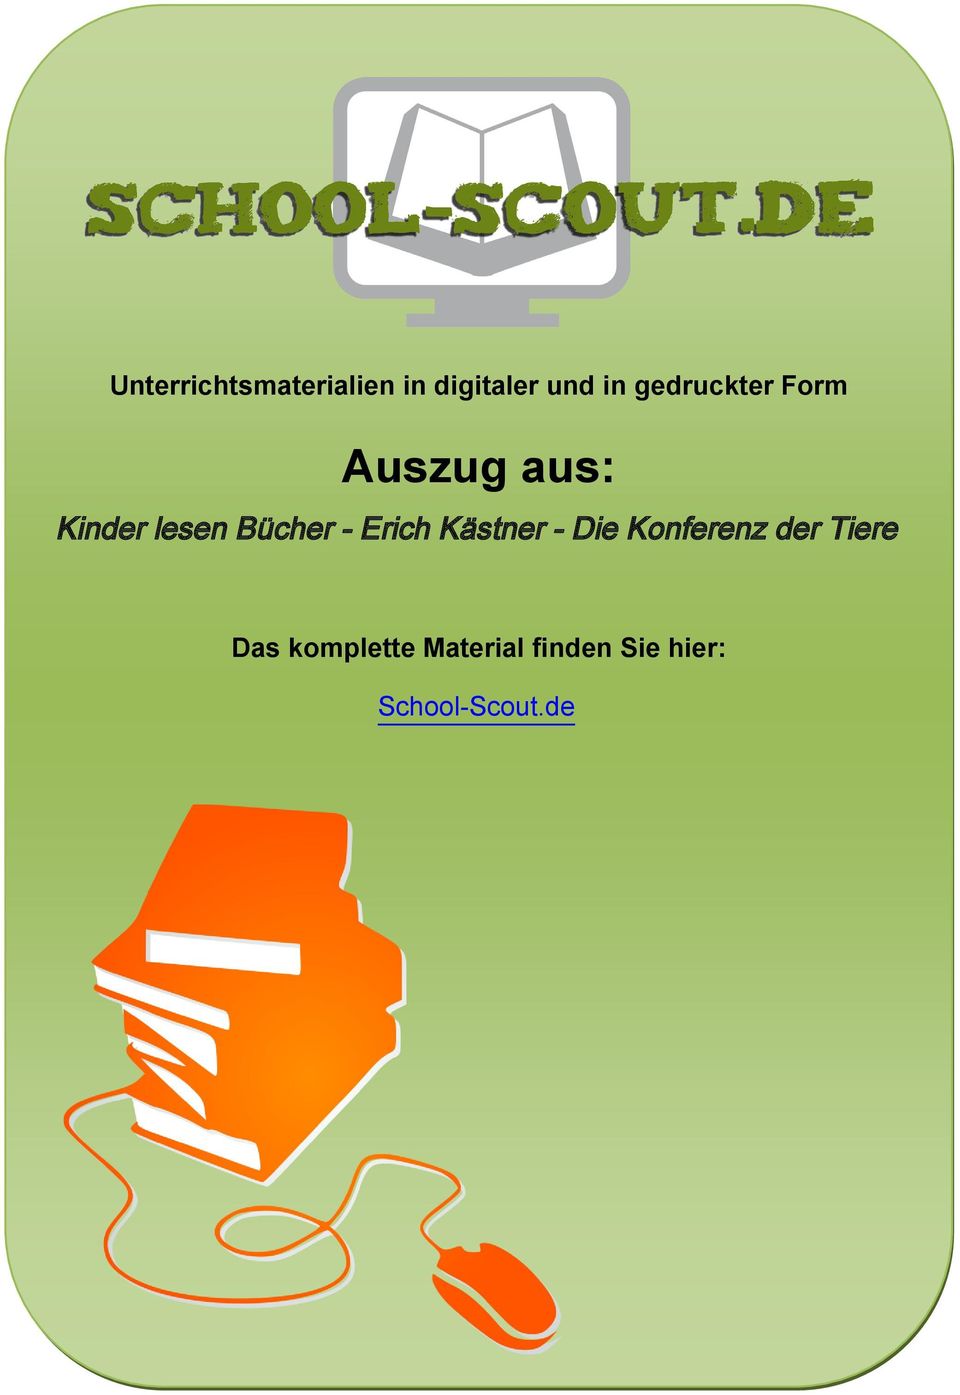 Bücher - Erich Kästner - Die Konferenz der